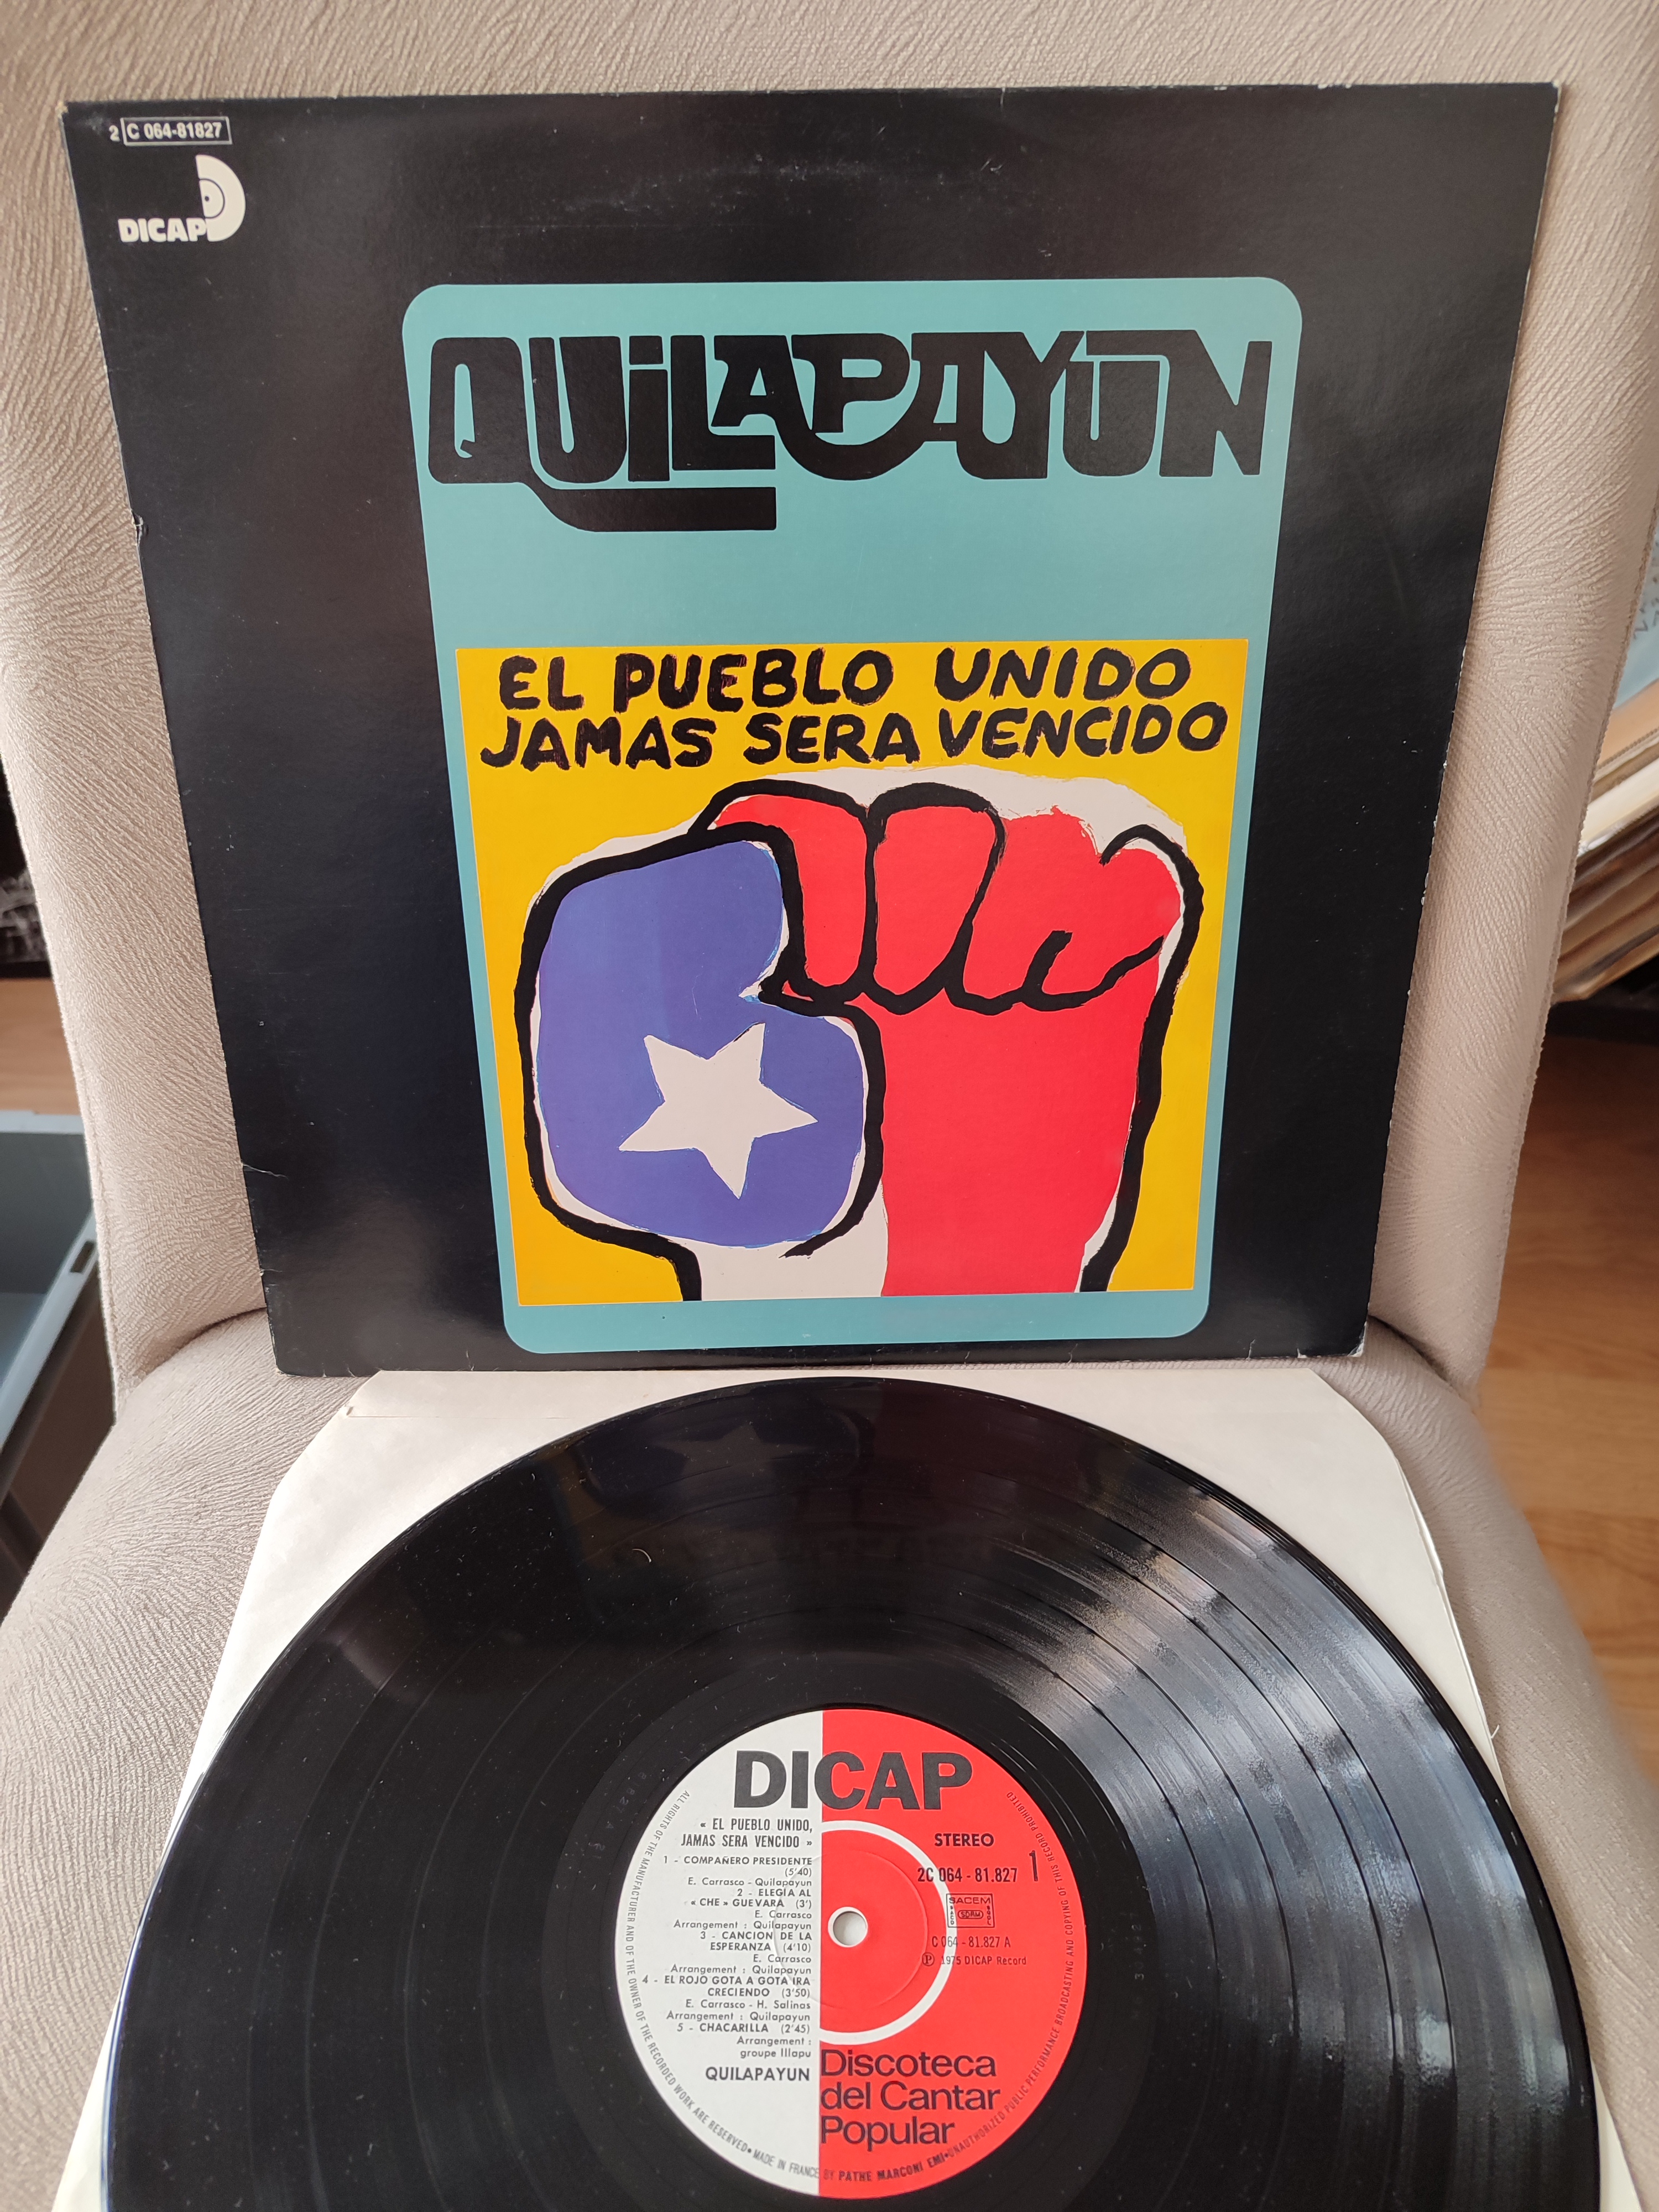 QUILAPAYUN - El Pueblo Unido, Jamas Sera Vencido - 1975 Fransa Basım 33lük LP Albüm 2. EL